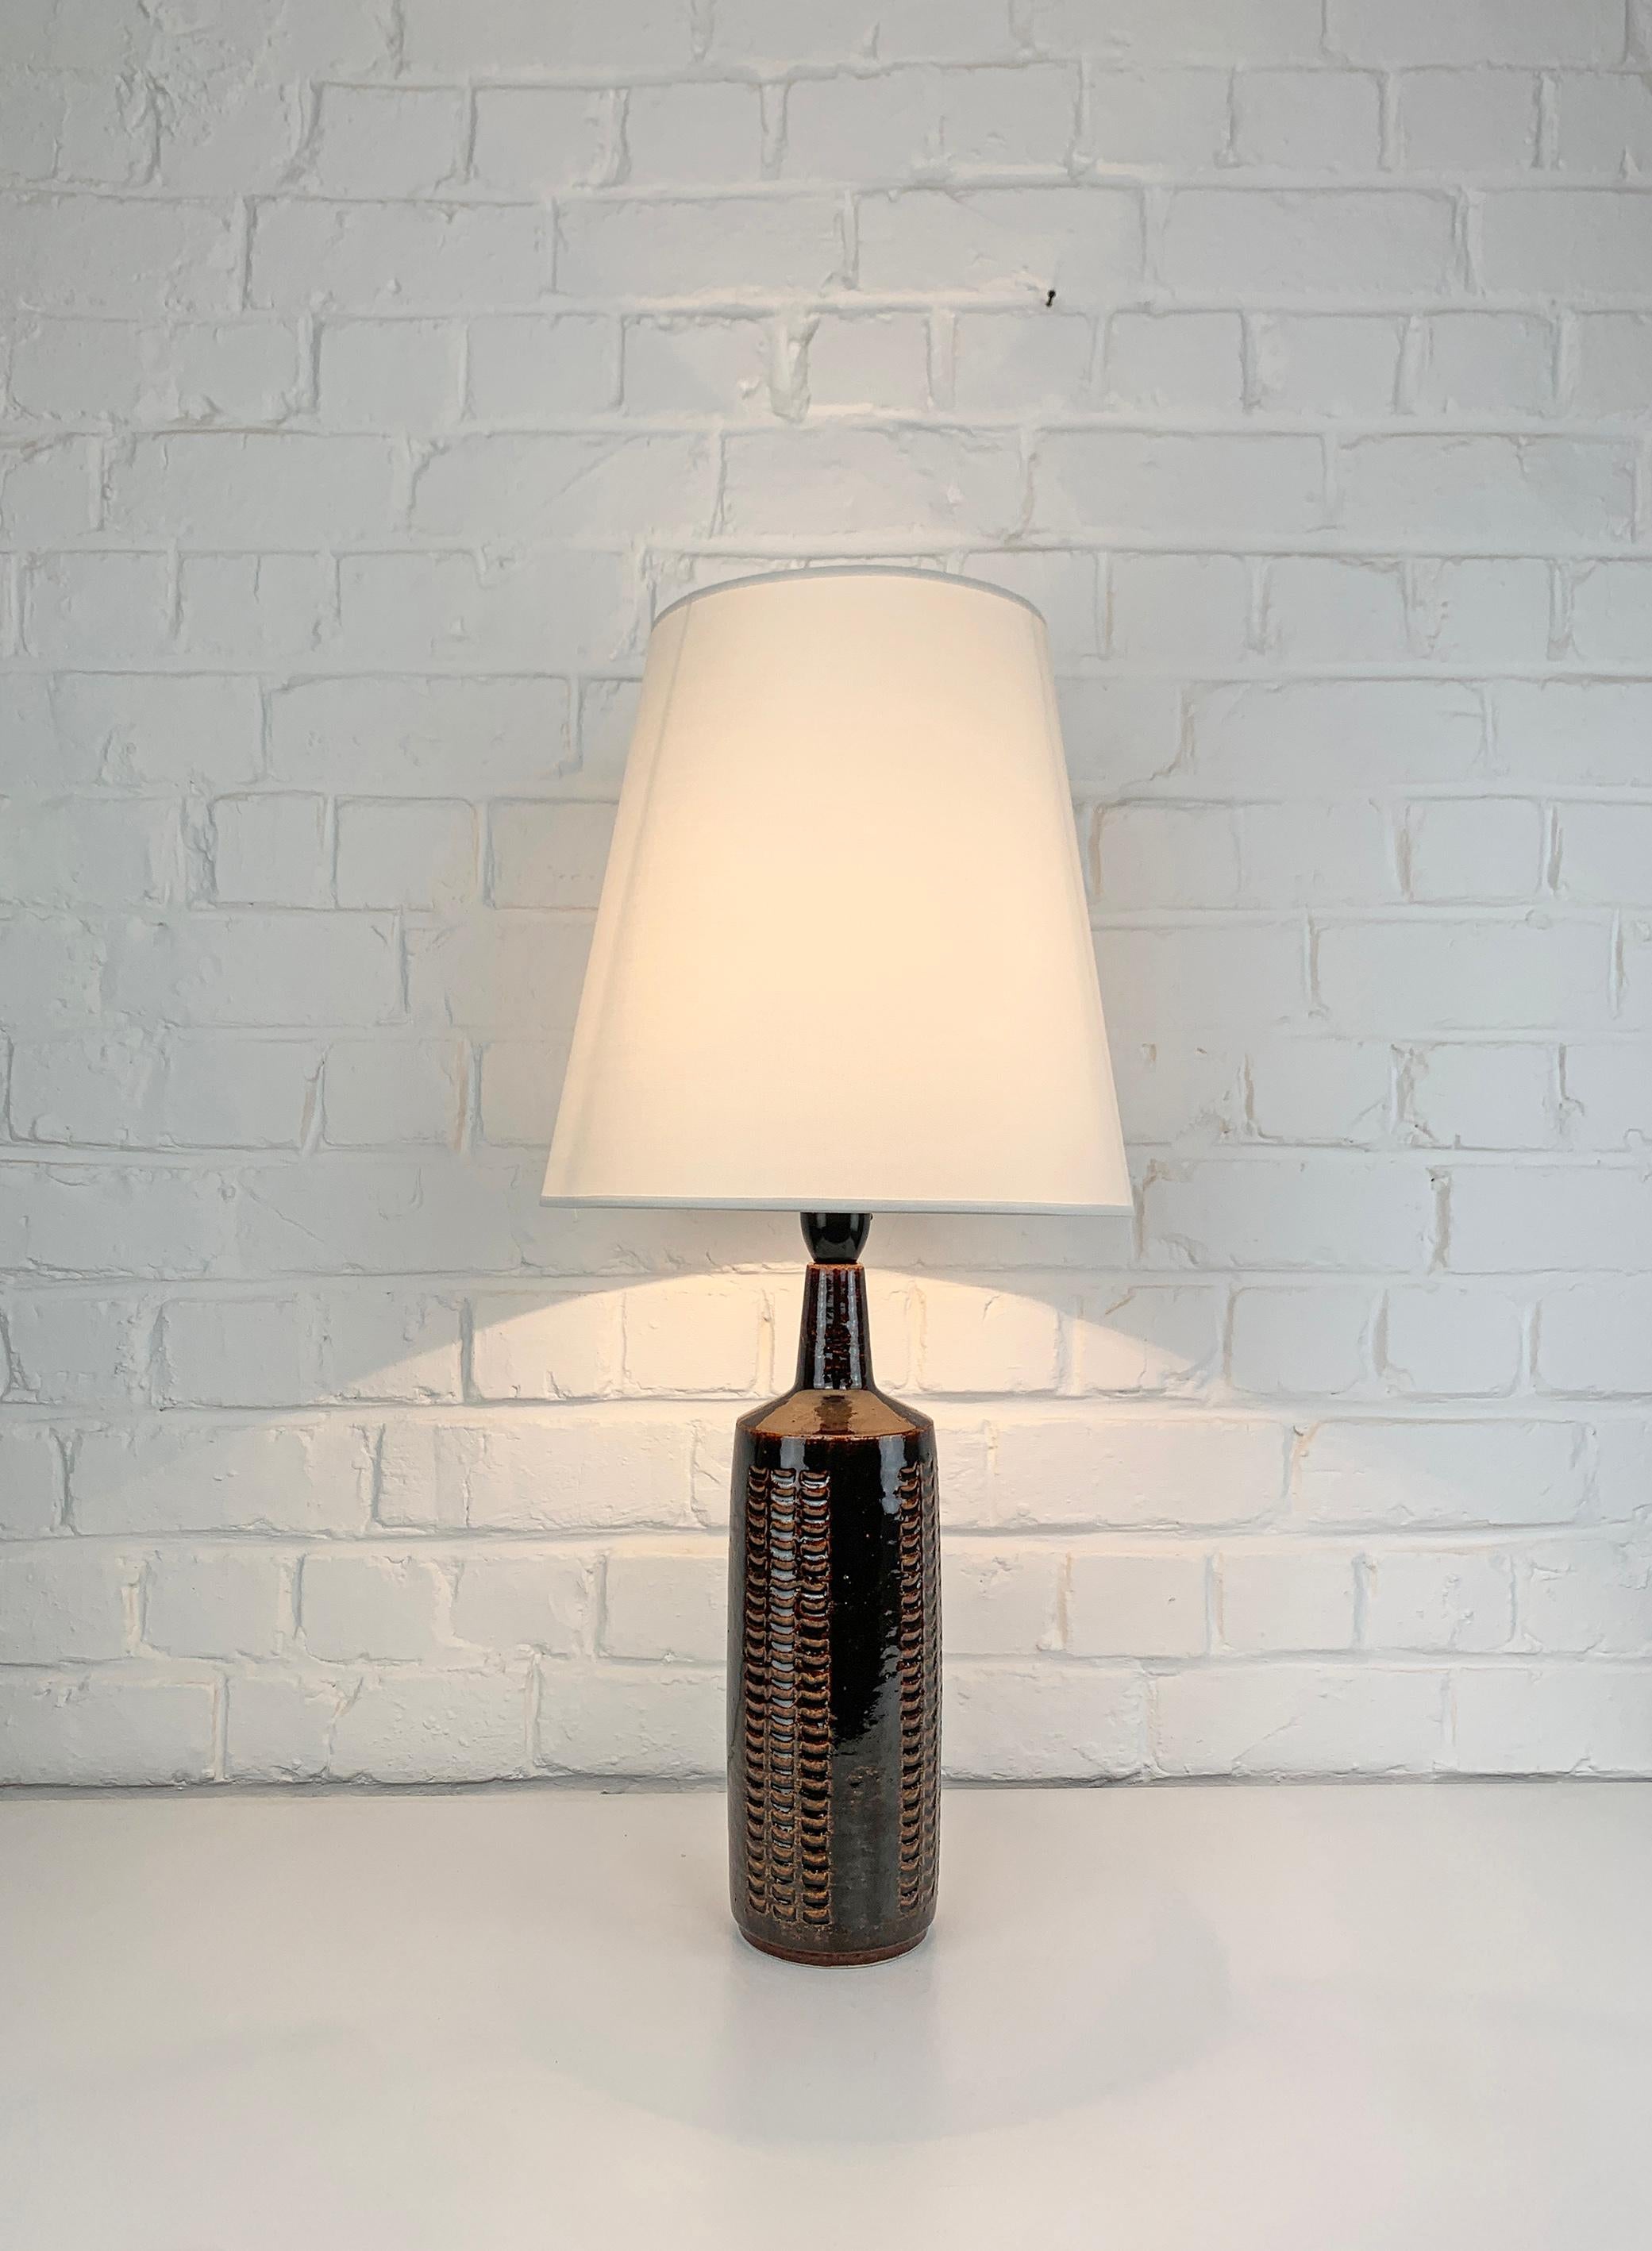 Cette lampe a été produite par Palshus (Danemark), fondée par Per et sa femme Annelise Linnemann-Schmidt. 

Le couple a créé et produit des objets en chamotte (argile danoise) avec des décorations imprimées (vaisselle, vases et lampes). Leur design